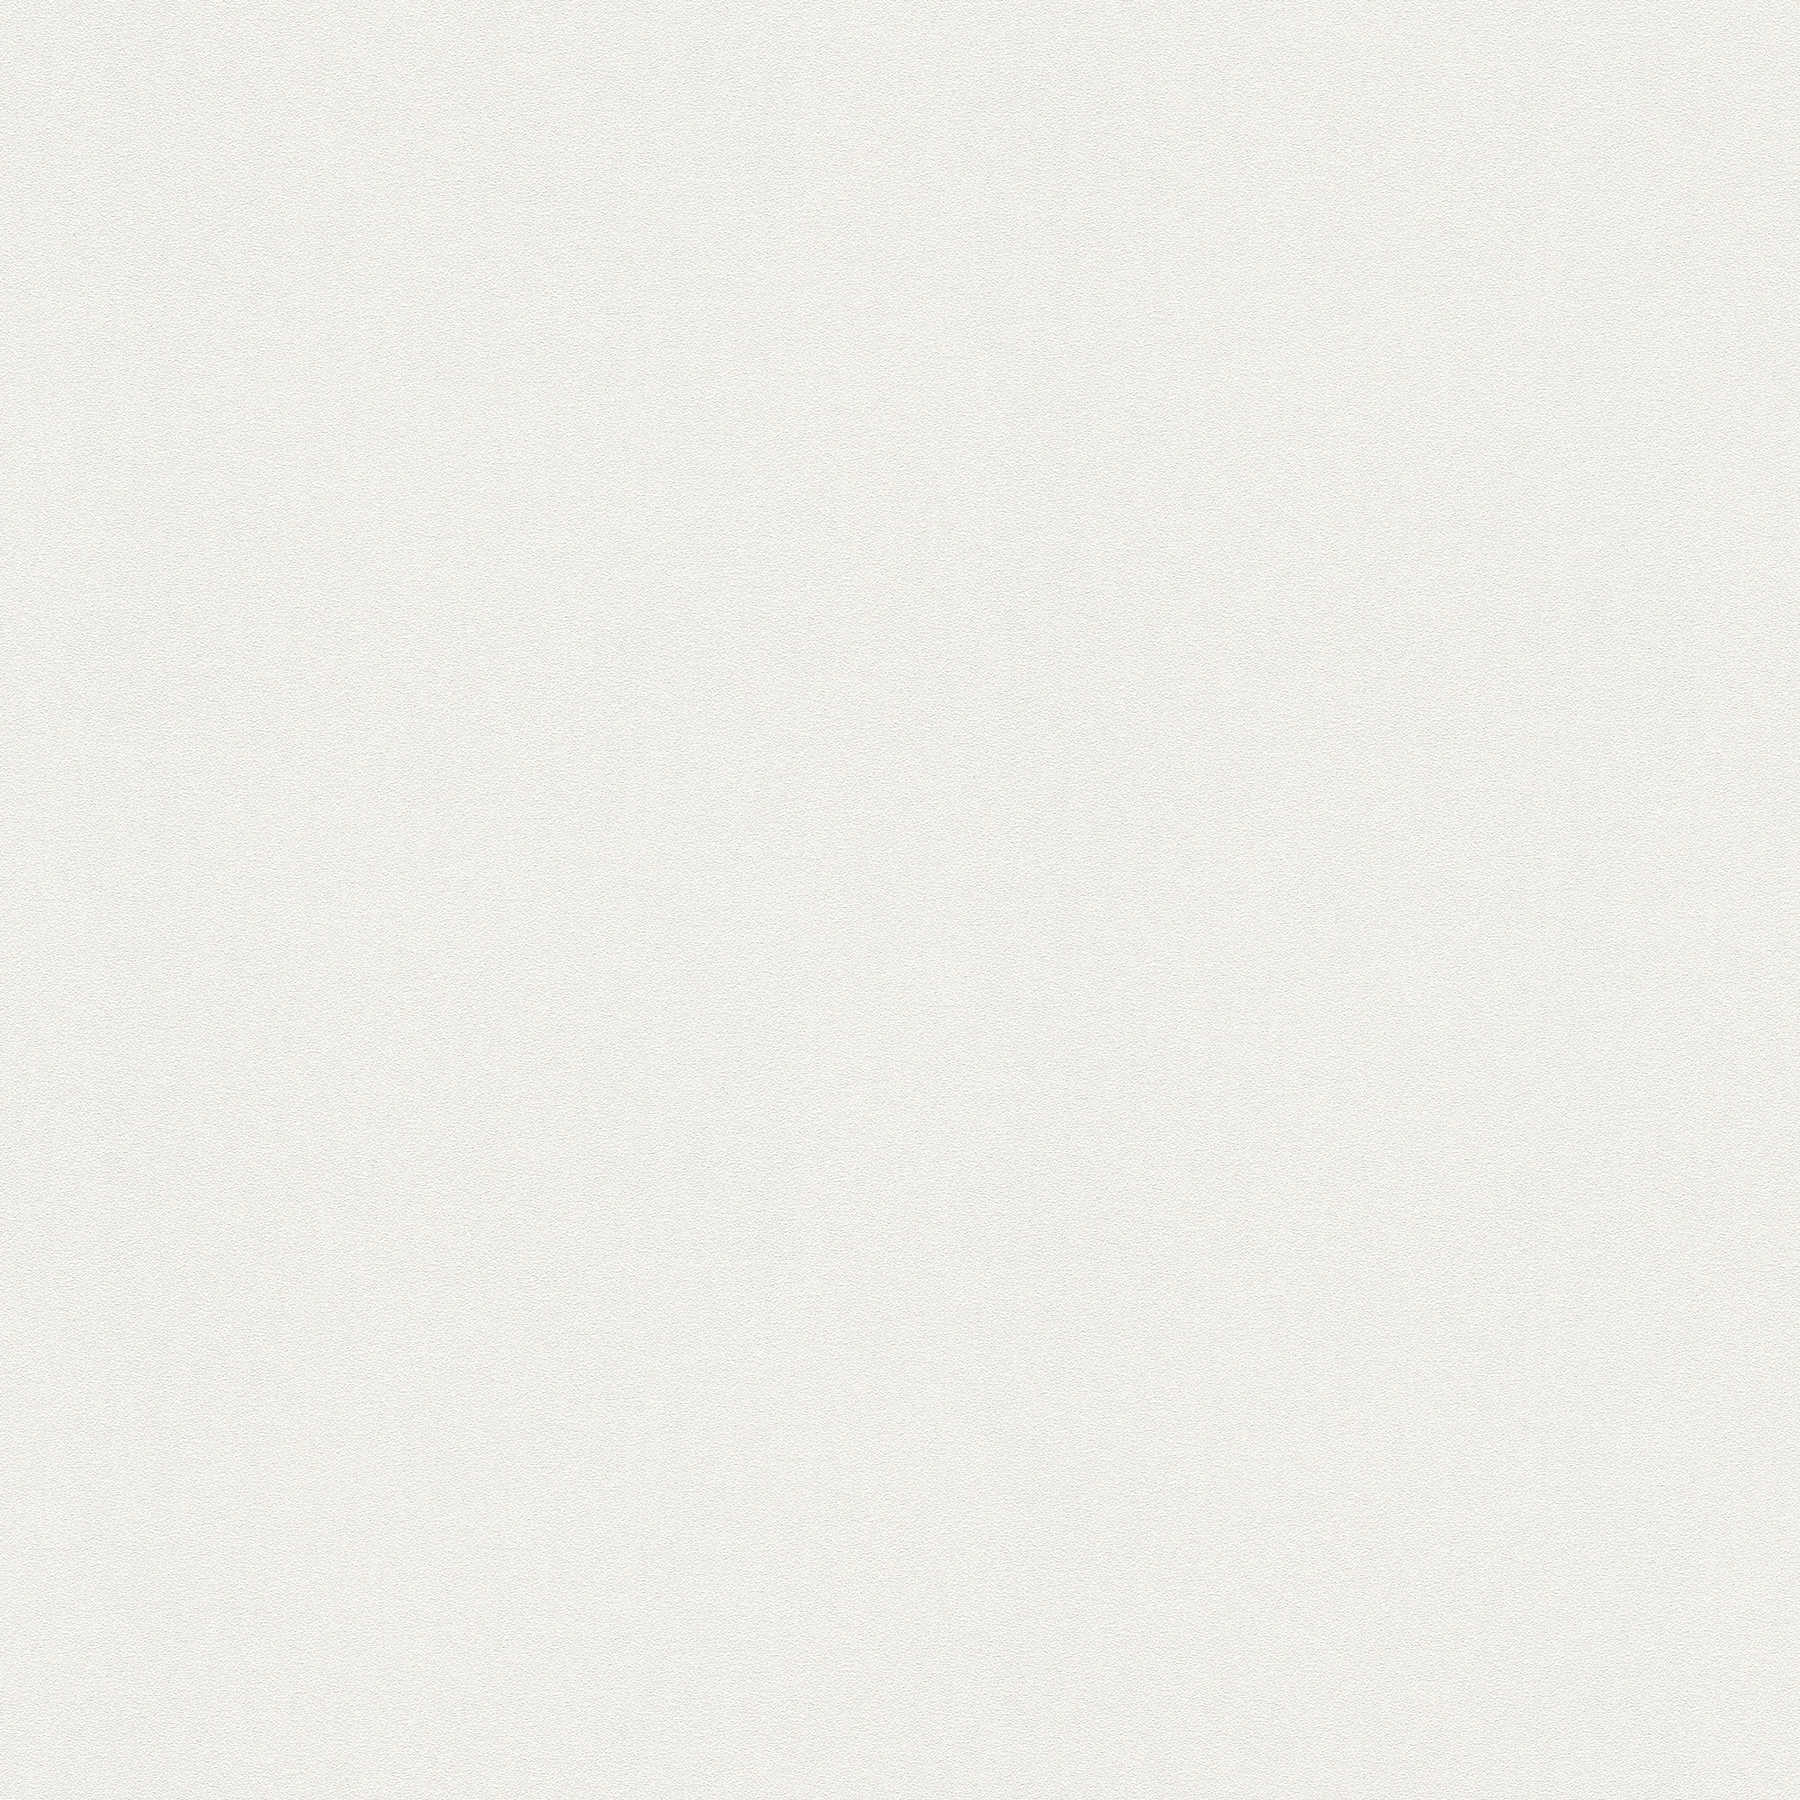         Neutrale Vliestapete einfarbig, hell & glatt – Weiß
    